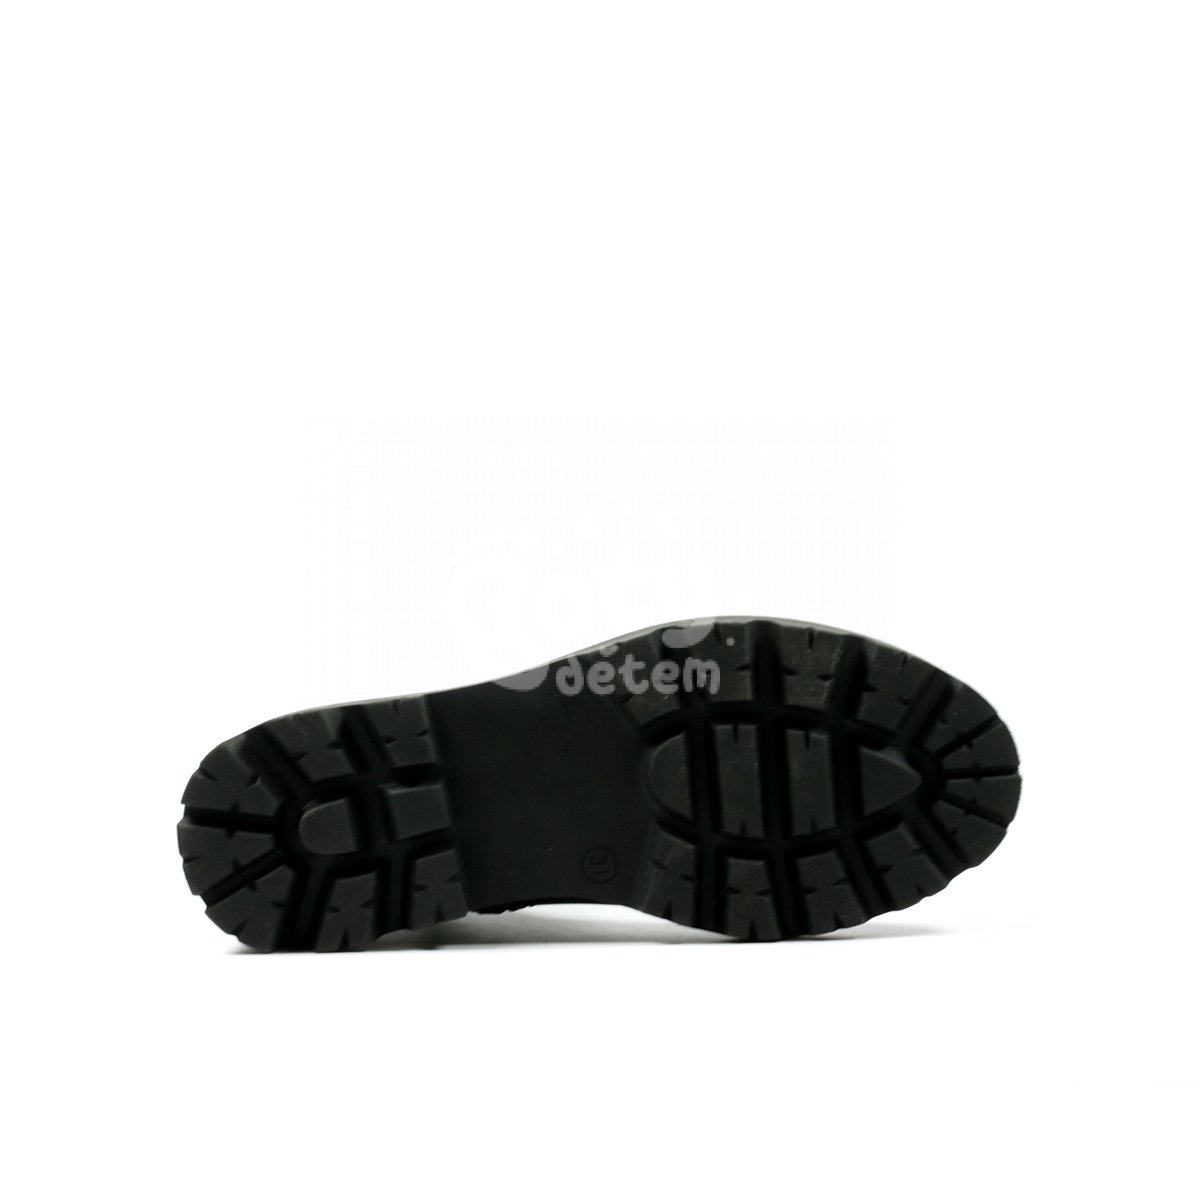 Kožená obuv Richter 5851-2131-9900 černá